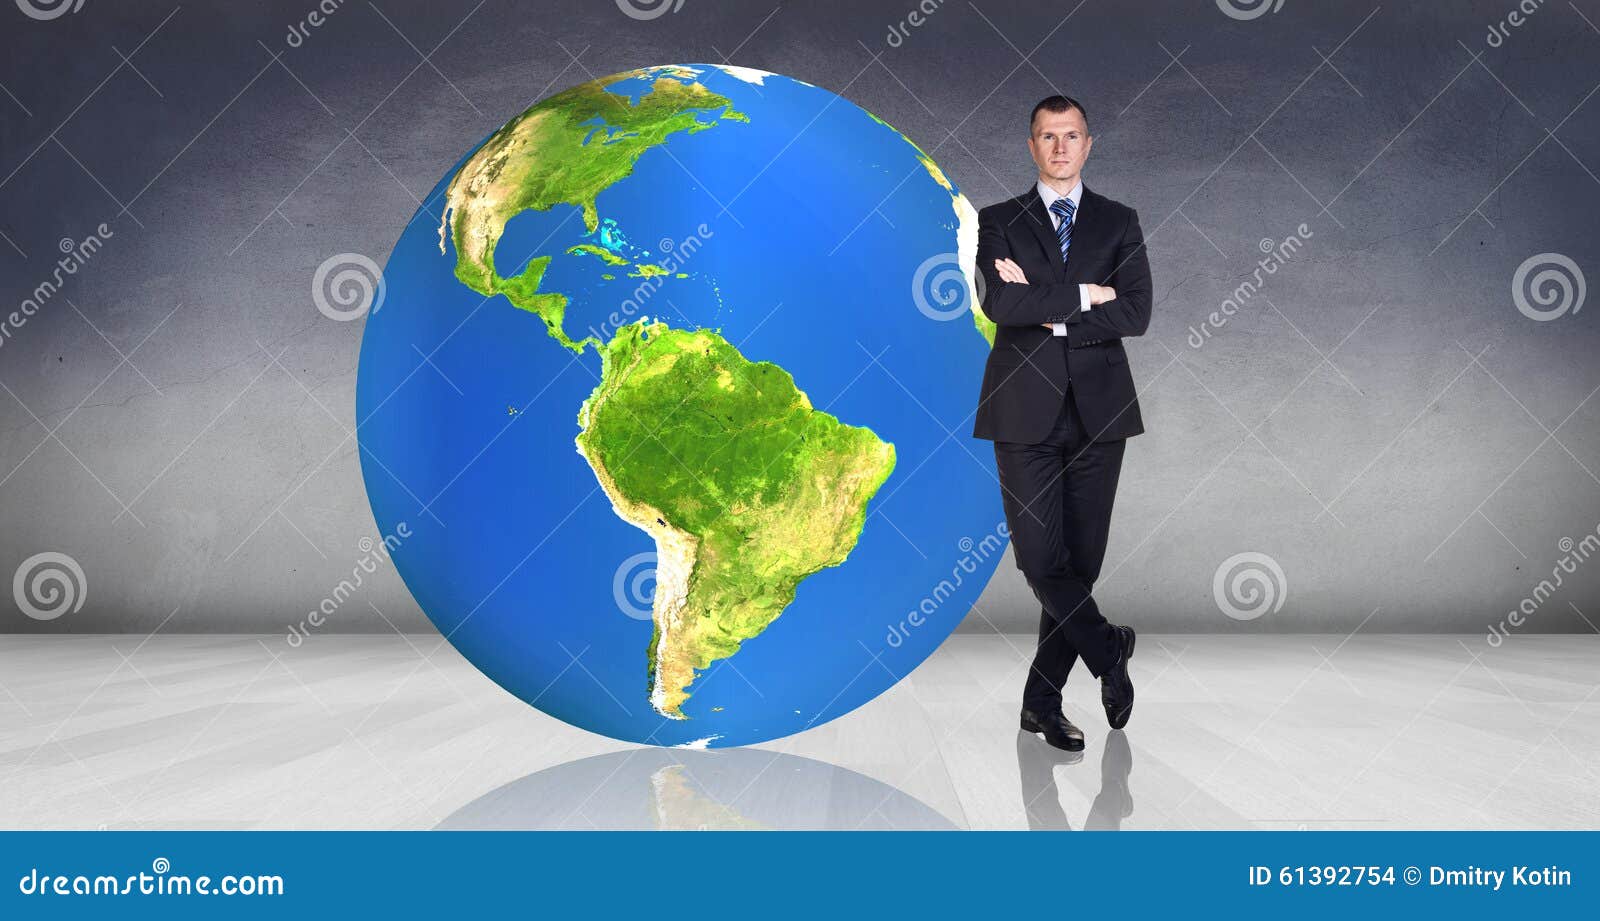 Земной шар обладает отрицательным. Председатель земного шара. Крупный мужчина на фоне земного шара. Властелин земного шара.